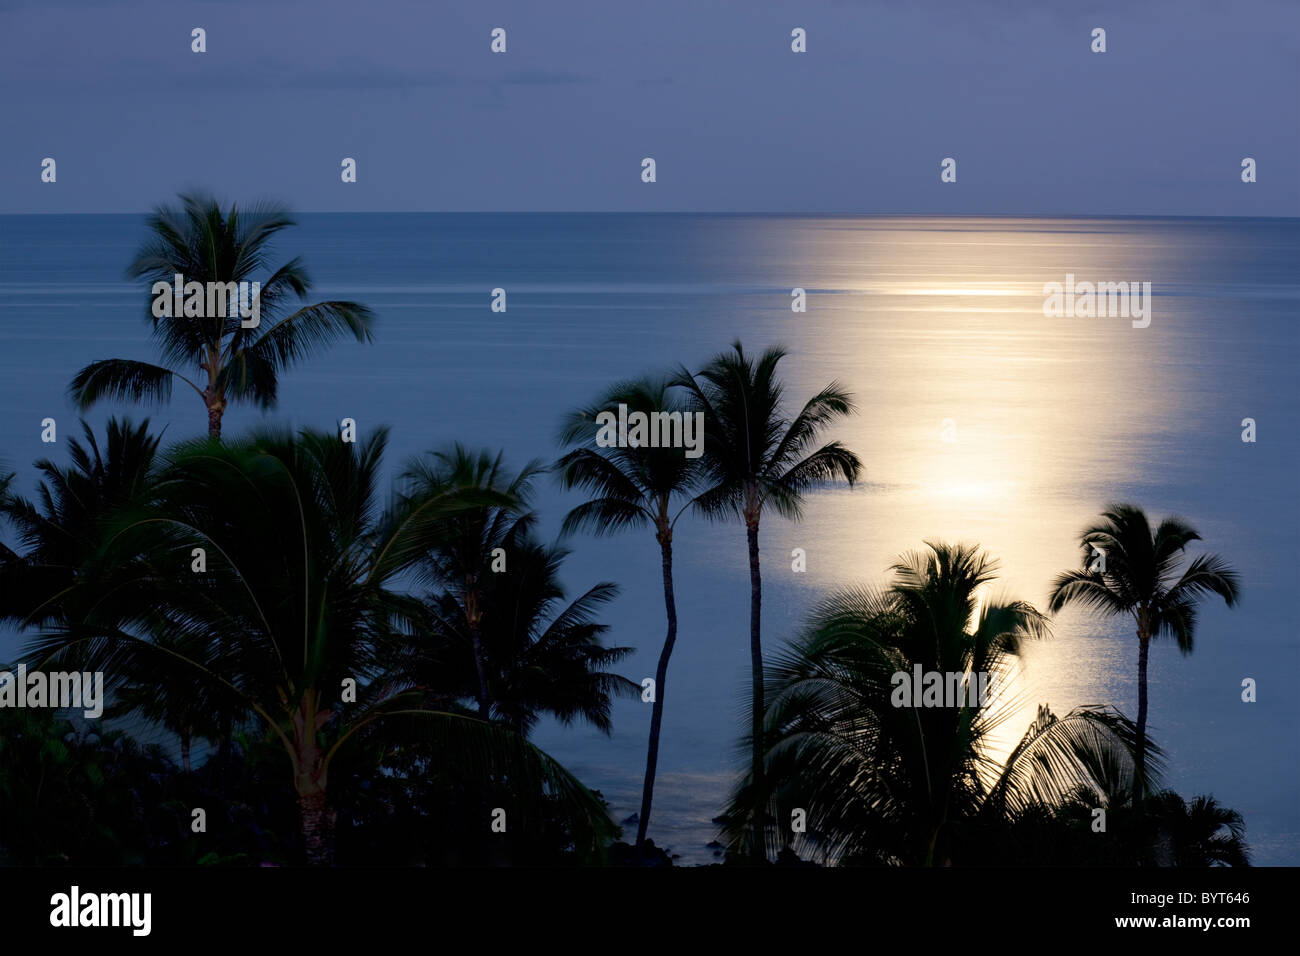 Impostazione luna oltre oceano con palme. Maui, Hawaii Foto Stock